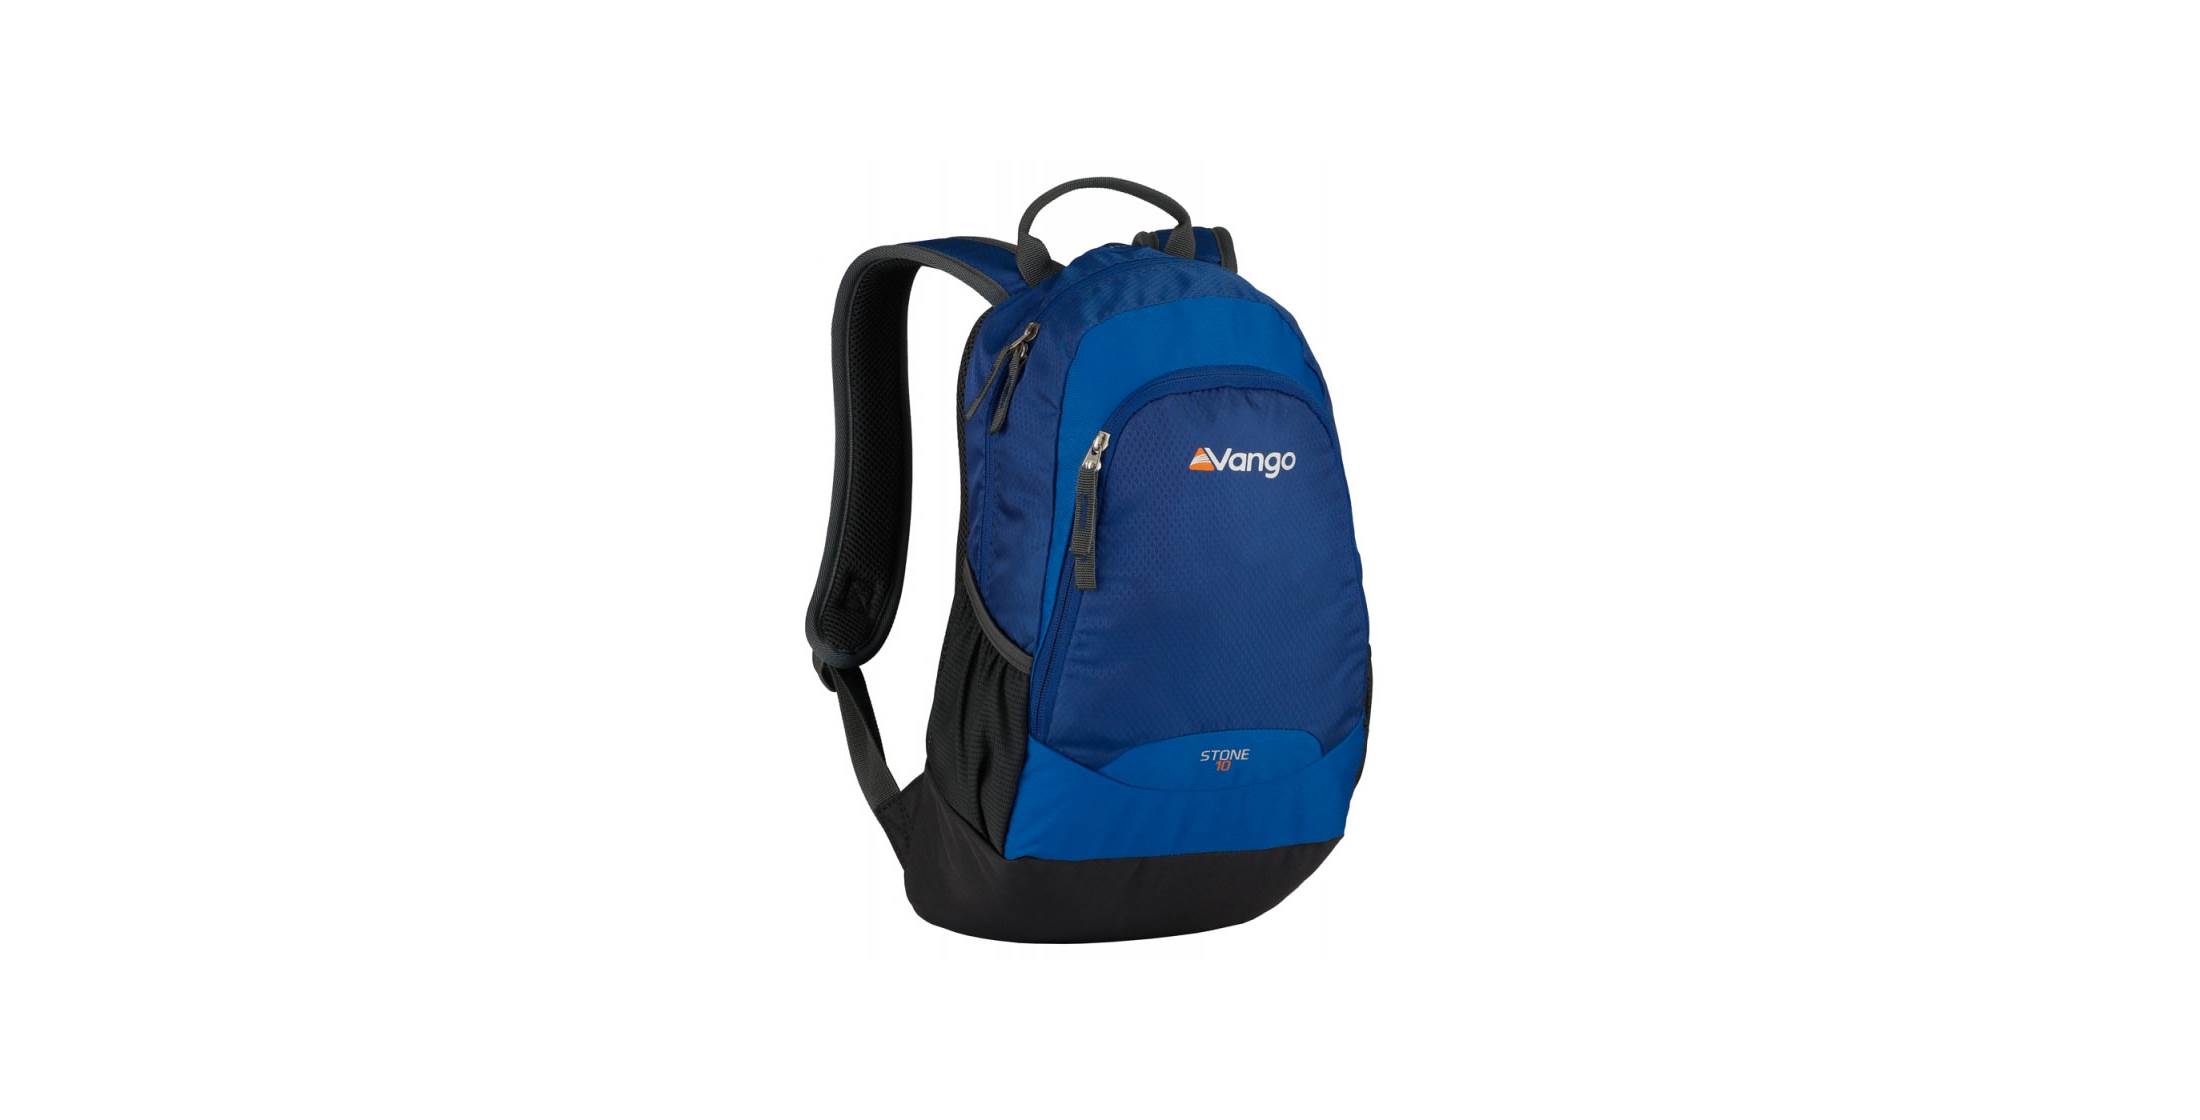 Vango Stone 10L Backpack OutdoorGB